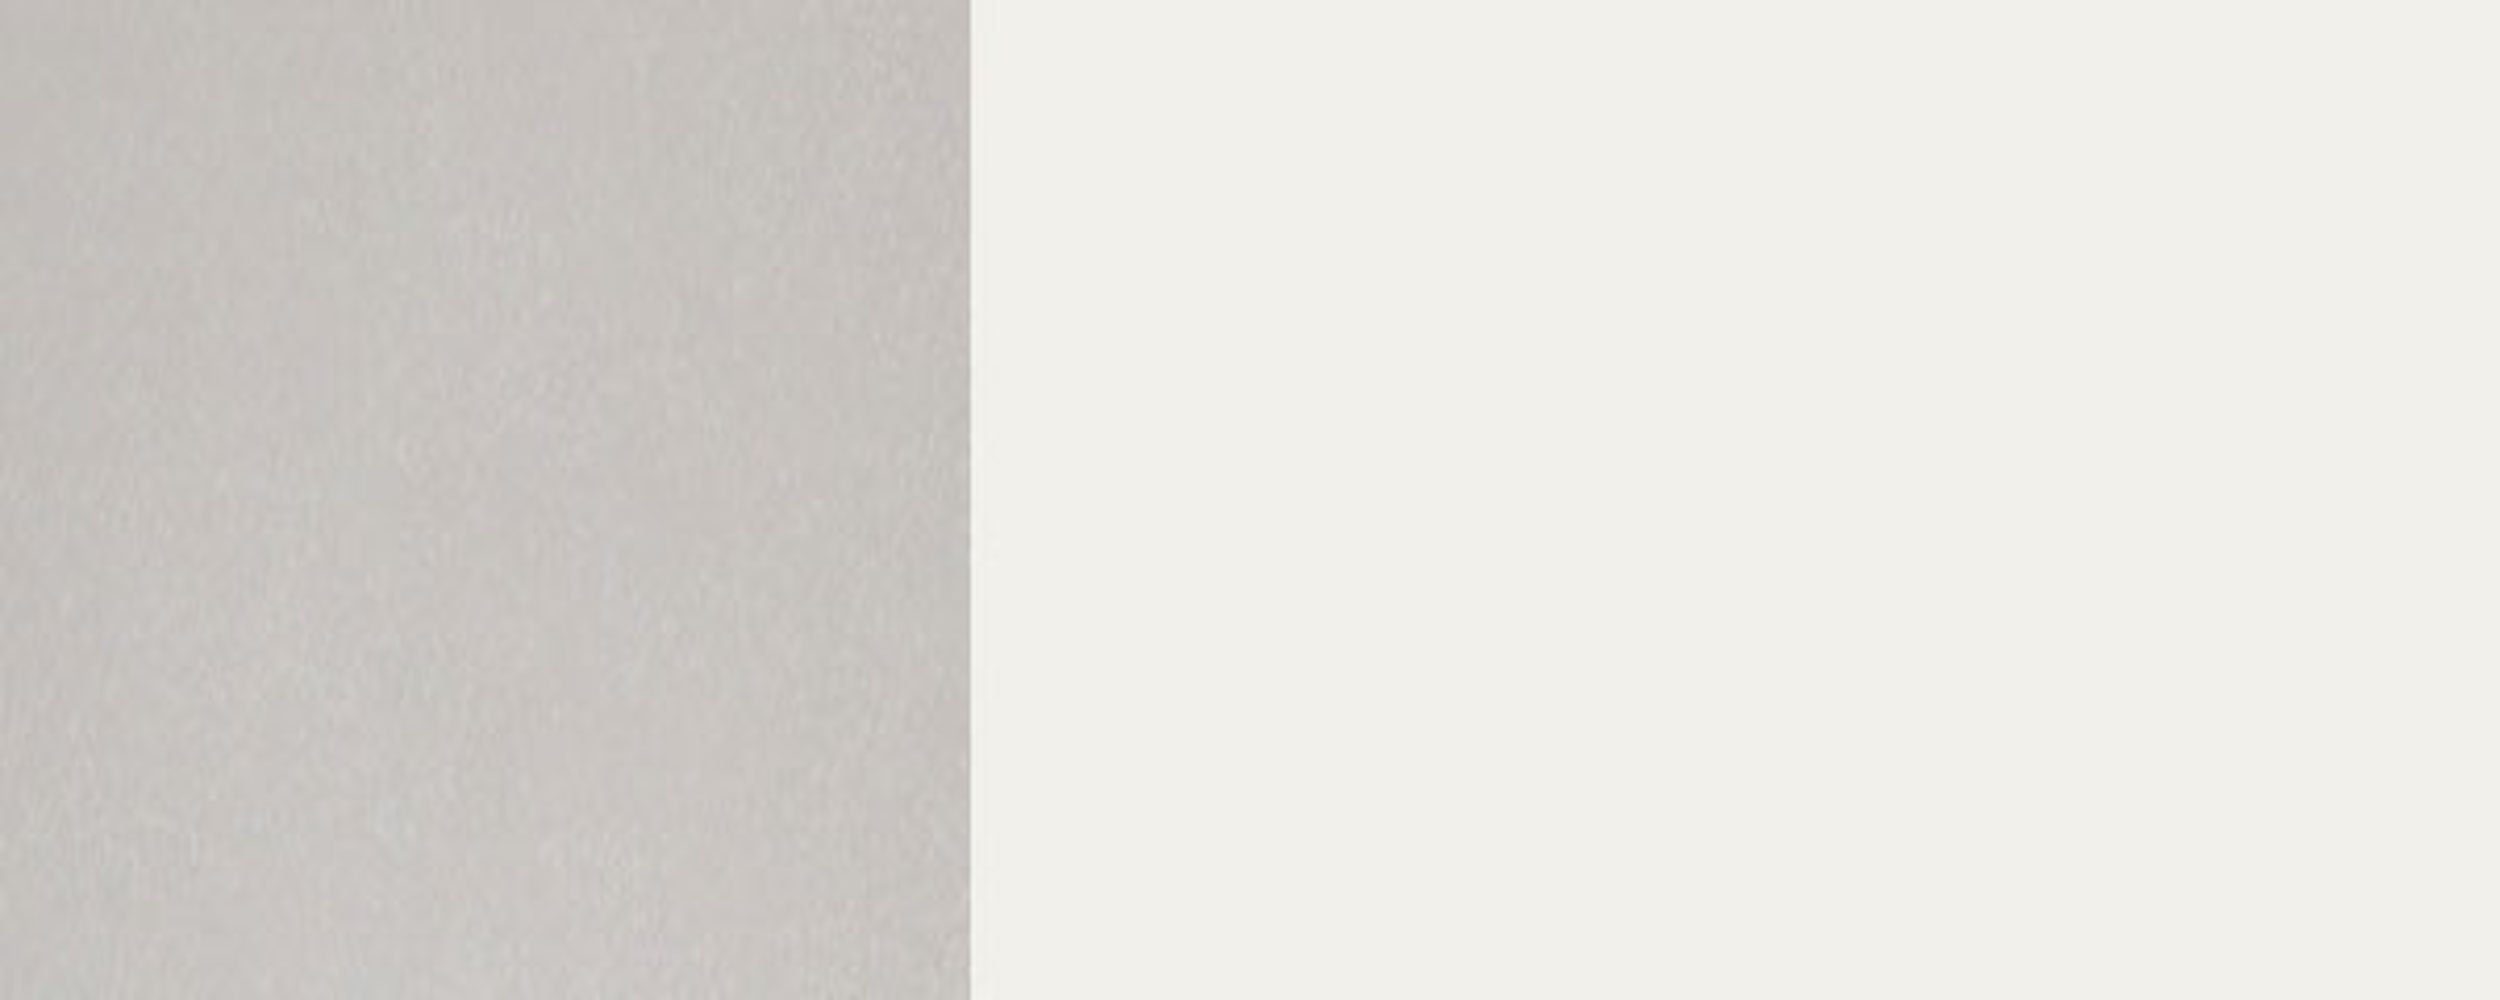 Feldmann-Wohnen Klapphängeschrank Napoli (Napoli) 45cm wählbar Glas Korpusfarbe & verkehrsweiß Front-, Hochglanz RAL grifflos 9016 1-türig Ausführung